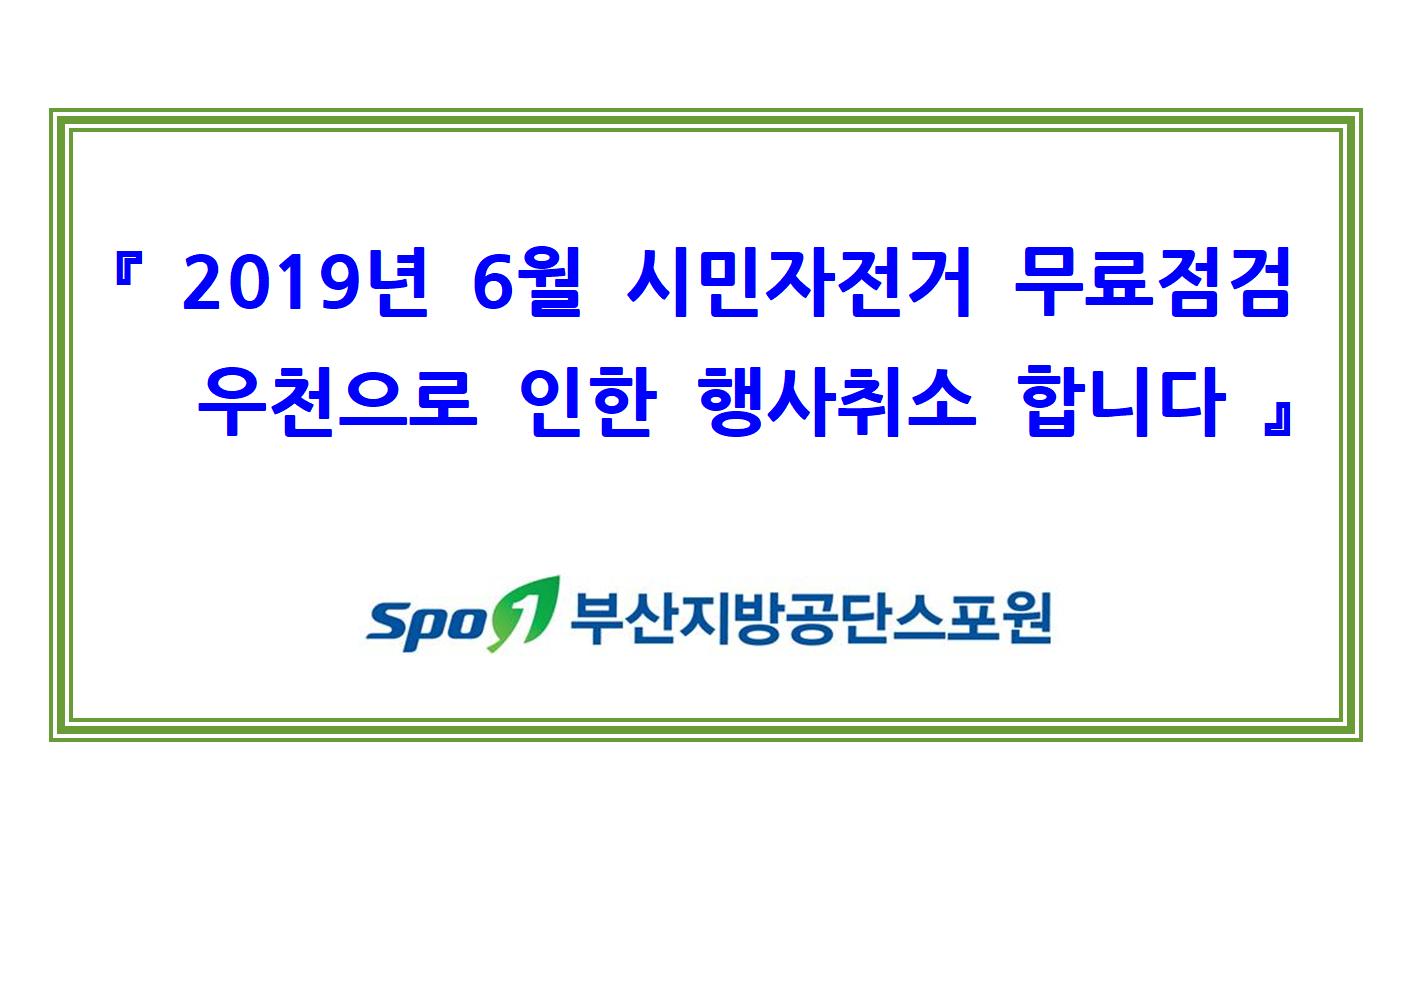 
『 2019년 6월 시민자전거 무료점검 
  우천으로 인한 행사취소 합니다 』



